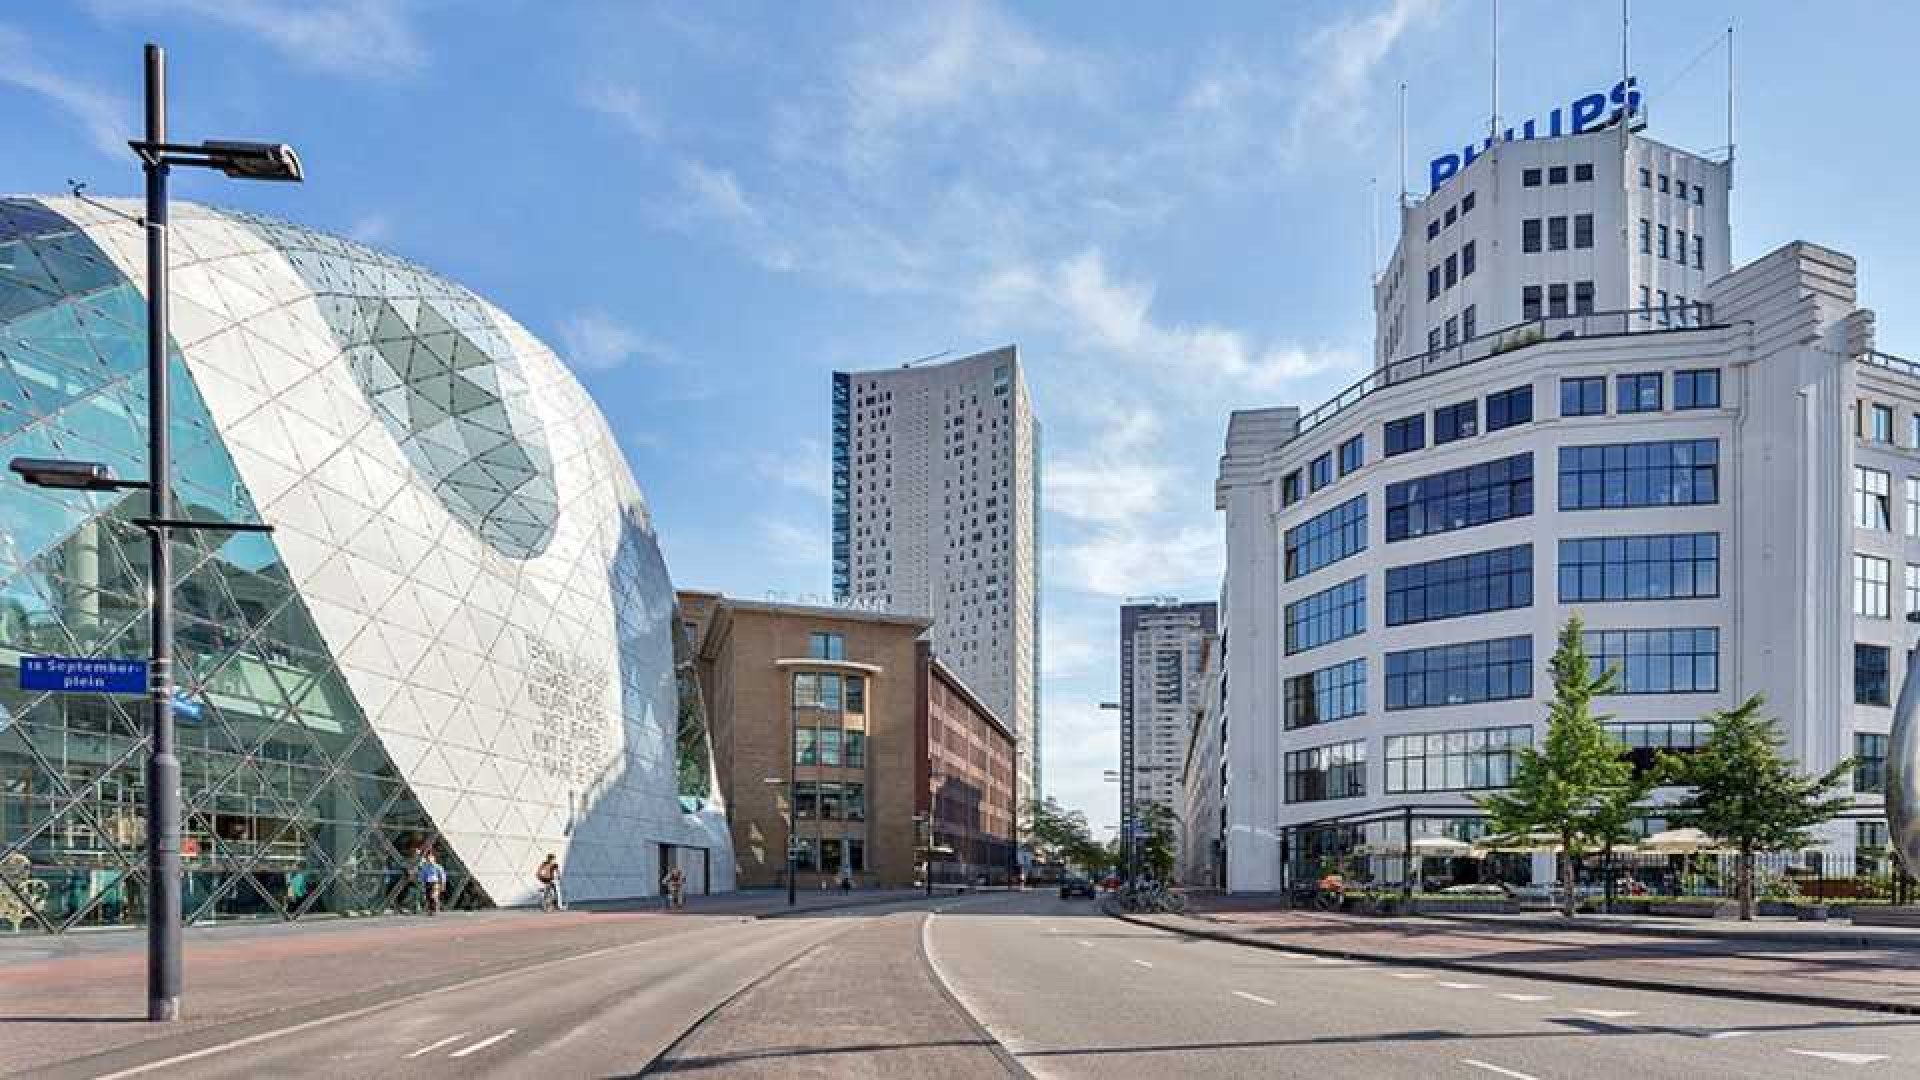 Amanda Krabbe en vriend Harrie Kolen kopen waanzinnig luxe penthouse in Eindhoven. Zie foto's 2